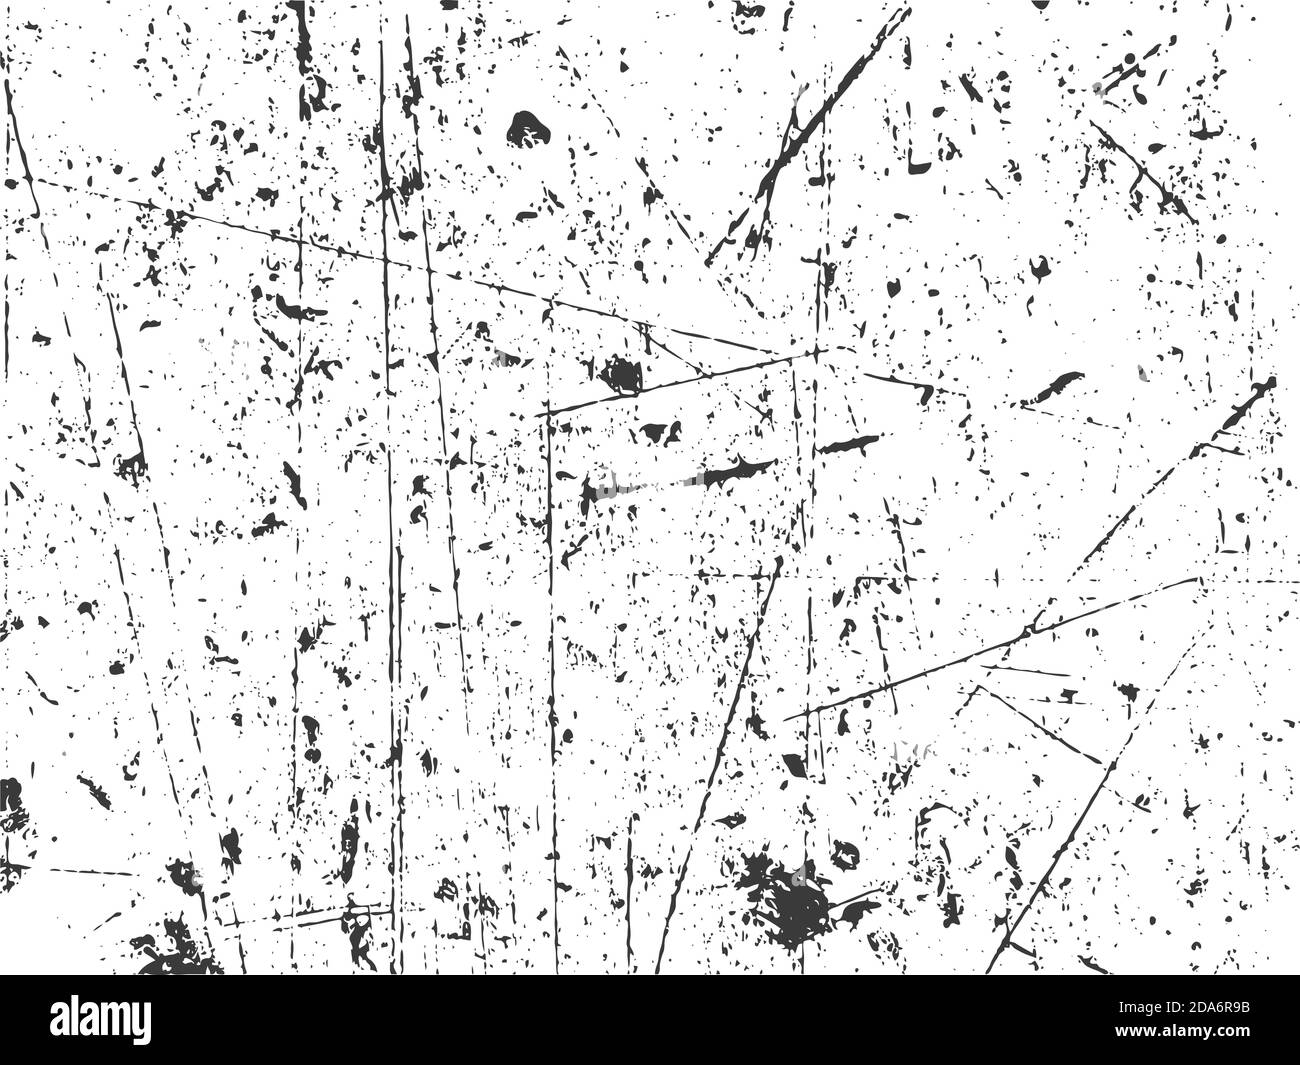 Sự kết hợp độc đáo giữa hình ảnh nền Grunge và vector textured, hình nền vật liệu Grunge đen trắng này đem lại cho bạn một cái nhìn khác lạ về sự hoang dã và mạnh mẽ. Hãy thưởng thức khả năng tạo ra sự cảm thụ và sự khác biệt của nó.